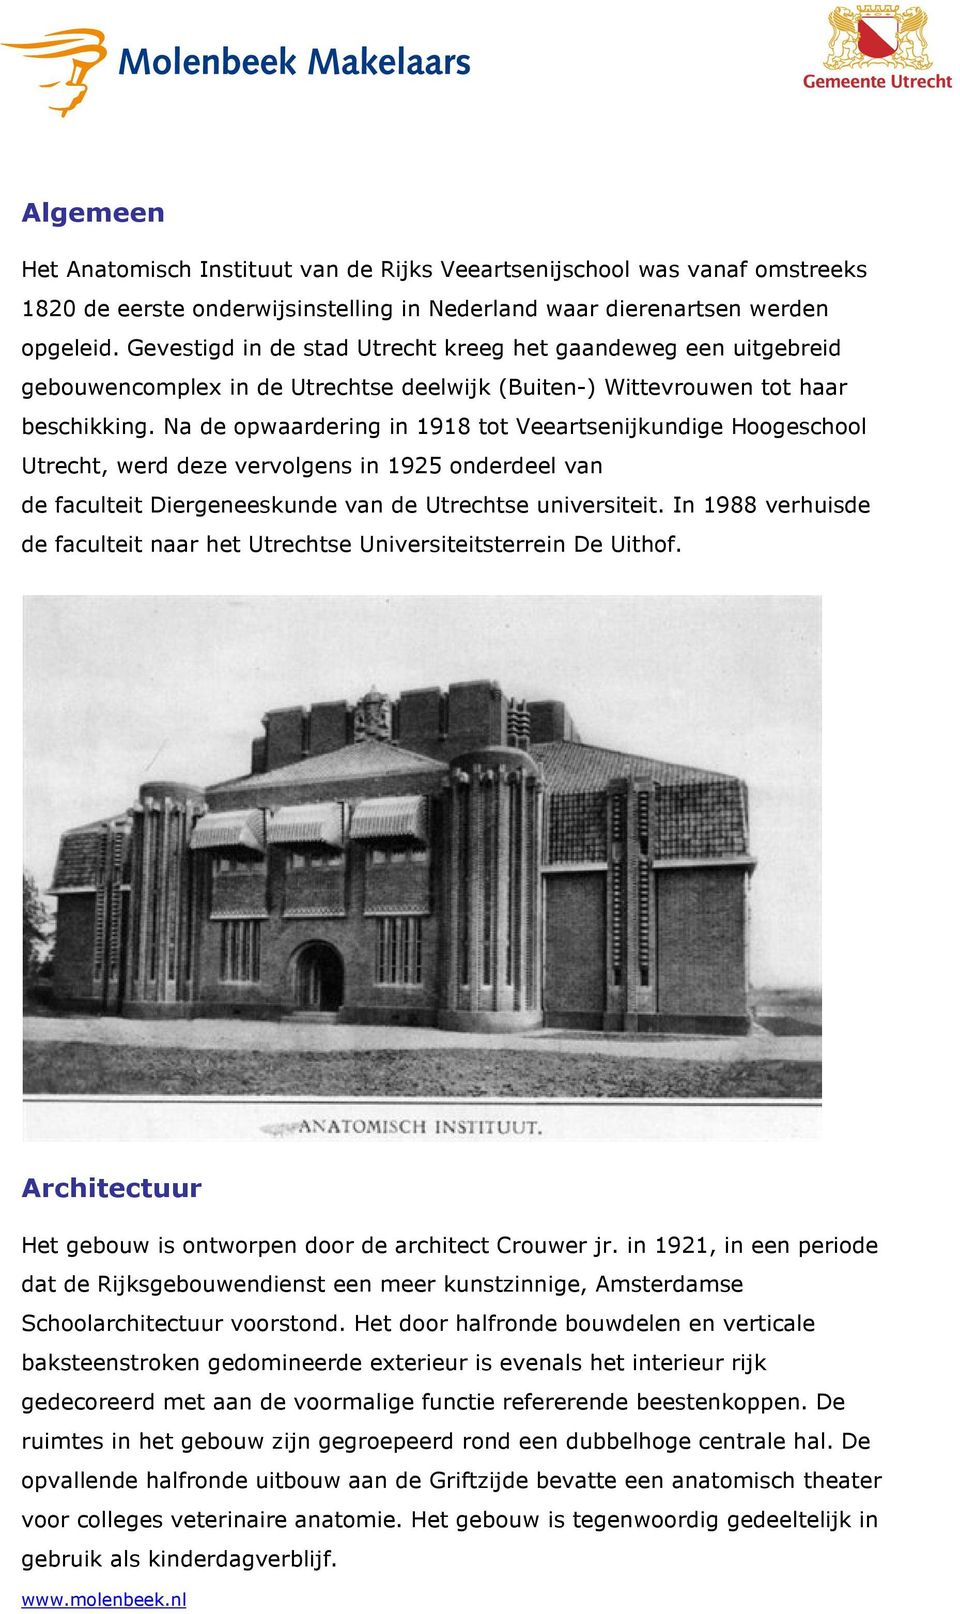 Na de opwaardering in 1918 tot Veeartsenijkundige Hoogeschool Utrecht, werd deze vervolgens in 1925 onderdeel van de faculteit Diergeneeskunde van de Utrechtse universiteit.